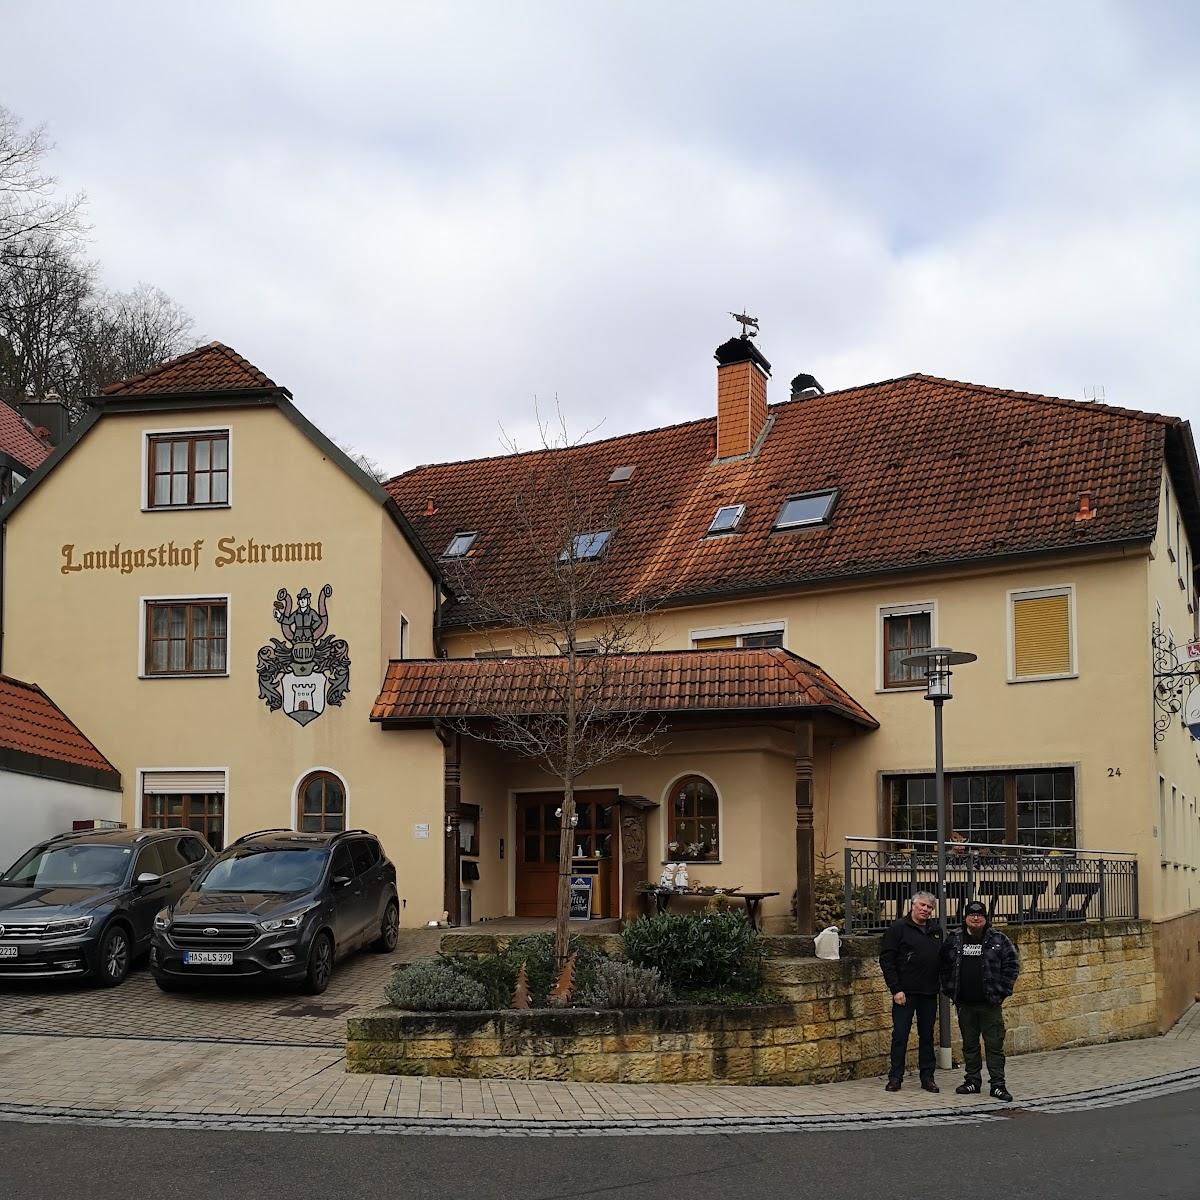 Restaurant "Landgasthof Schramm" in Eltmann